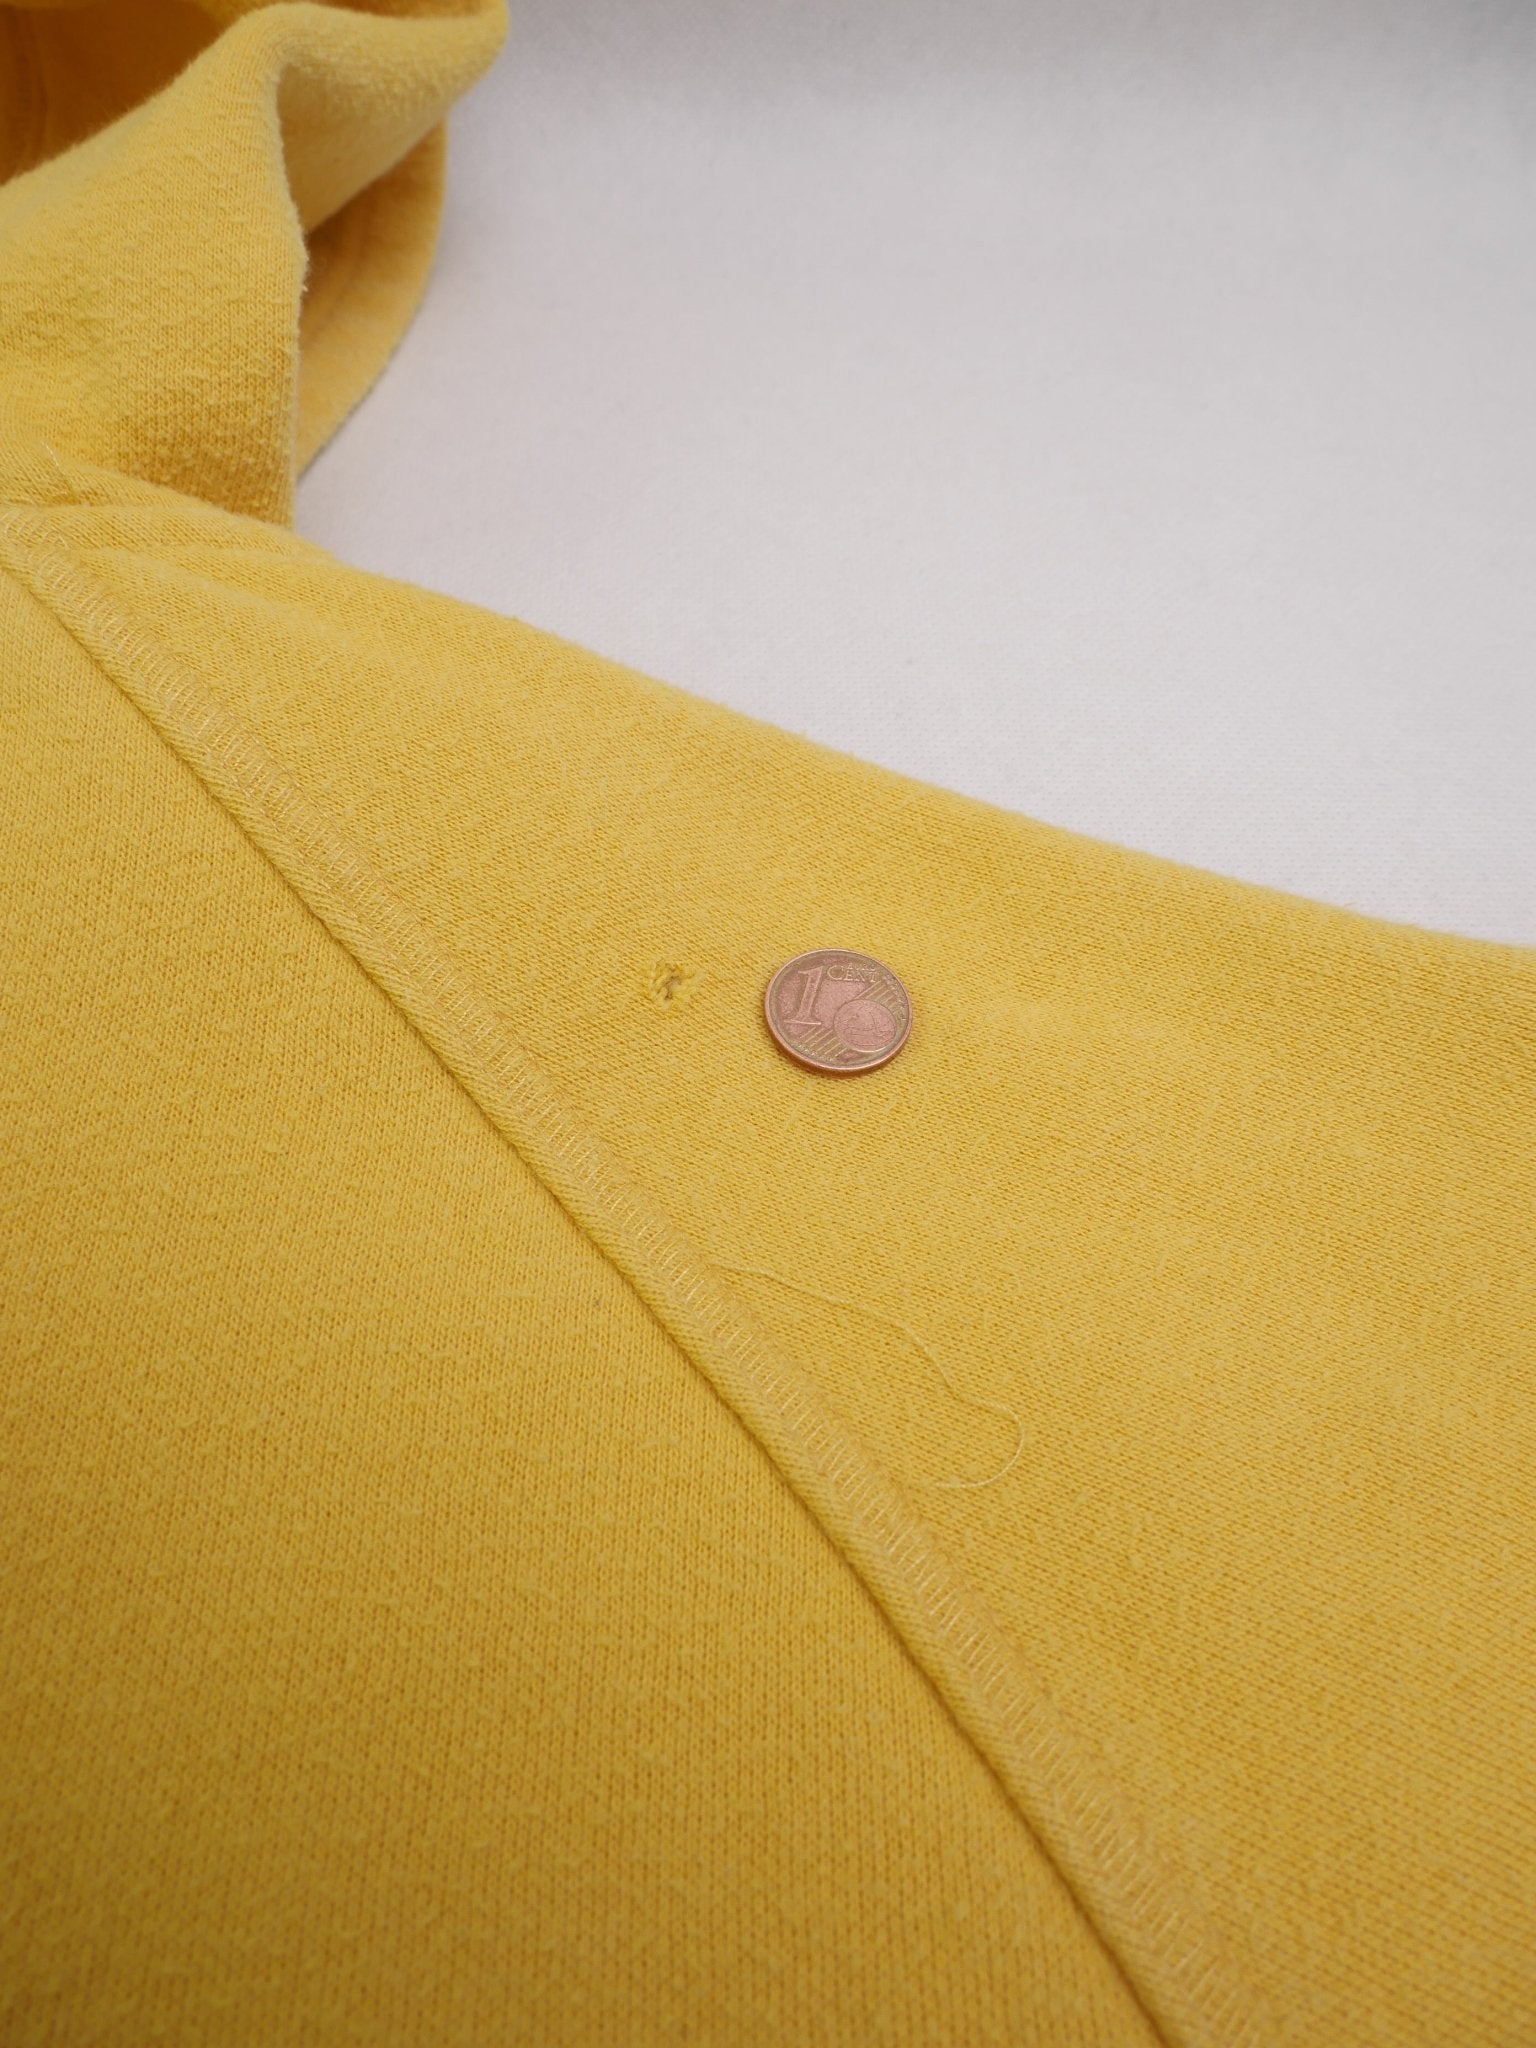 Nike embroidered Logo yellow Zip Hoodie - Peeces